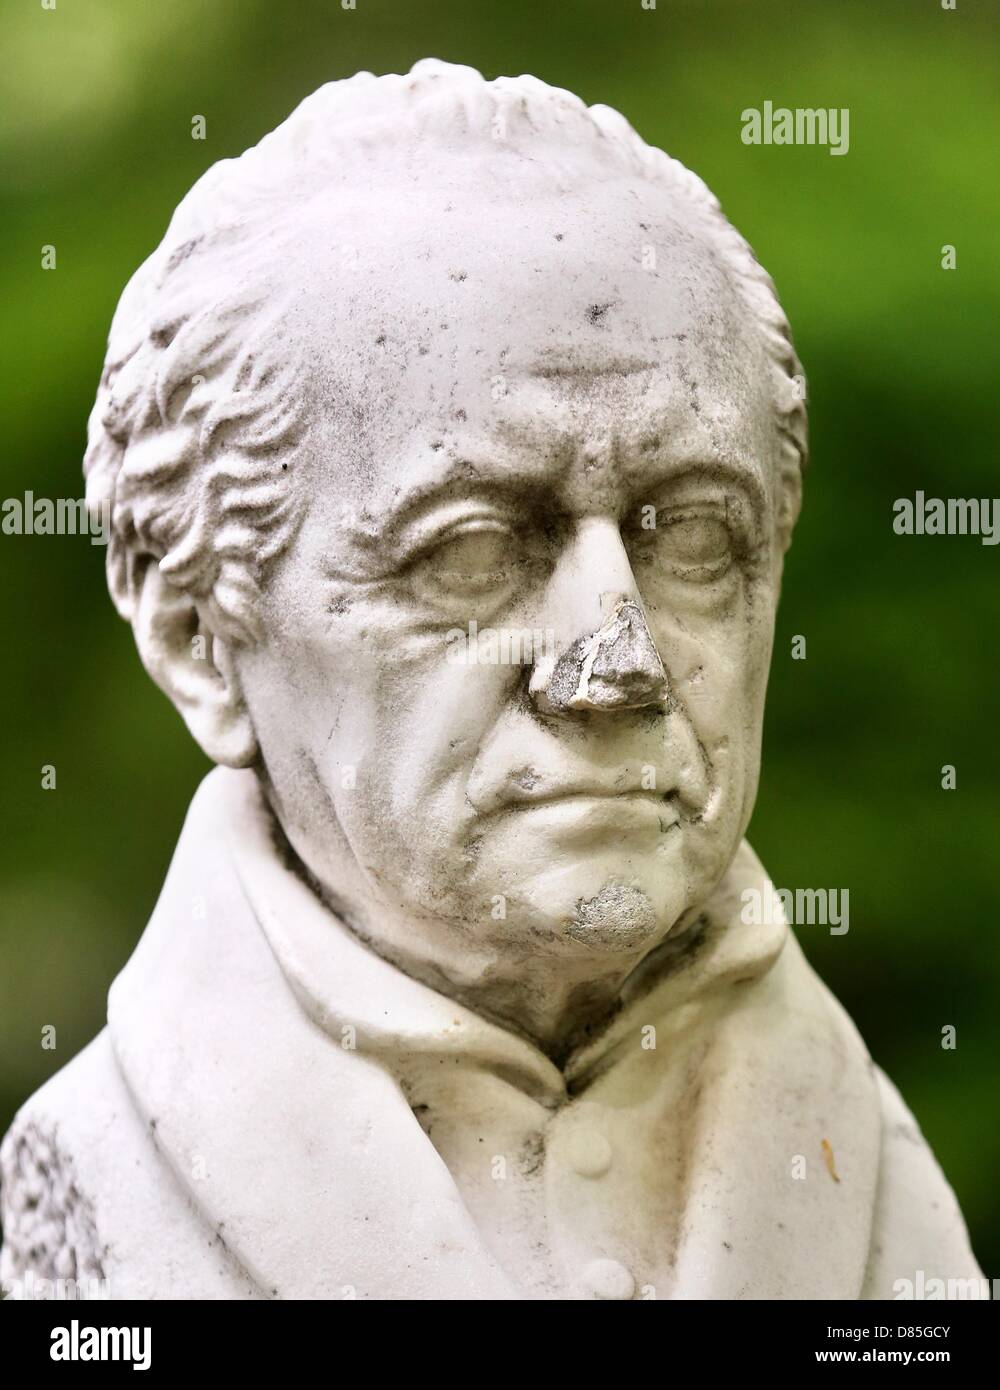 Busto di Johann Wolfgang von Goethe sorge nella cittadina termale di Bad Lauchstaedt in Germania, 10 maggio 2013. Vi è una famosa sorgente minerale nella città che Goethe utilizzato per visitare frequentemente. Foto: Jan Woitas Foto Stock